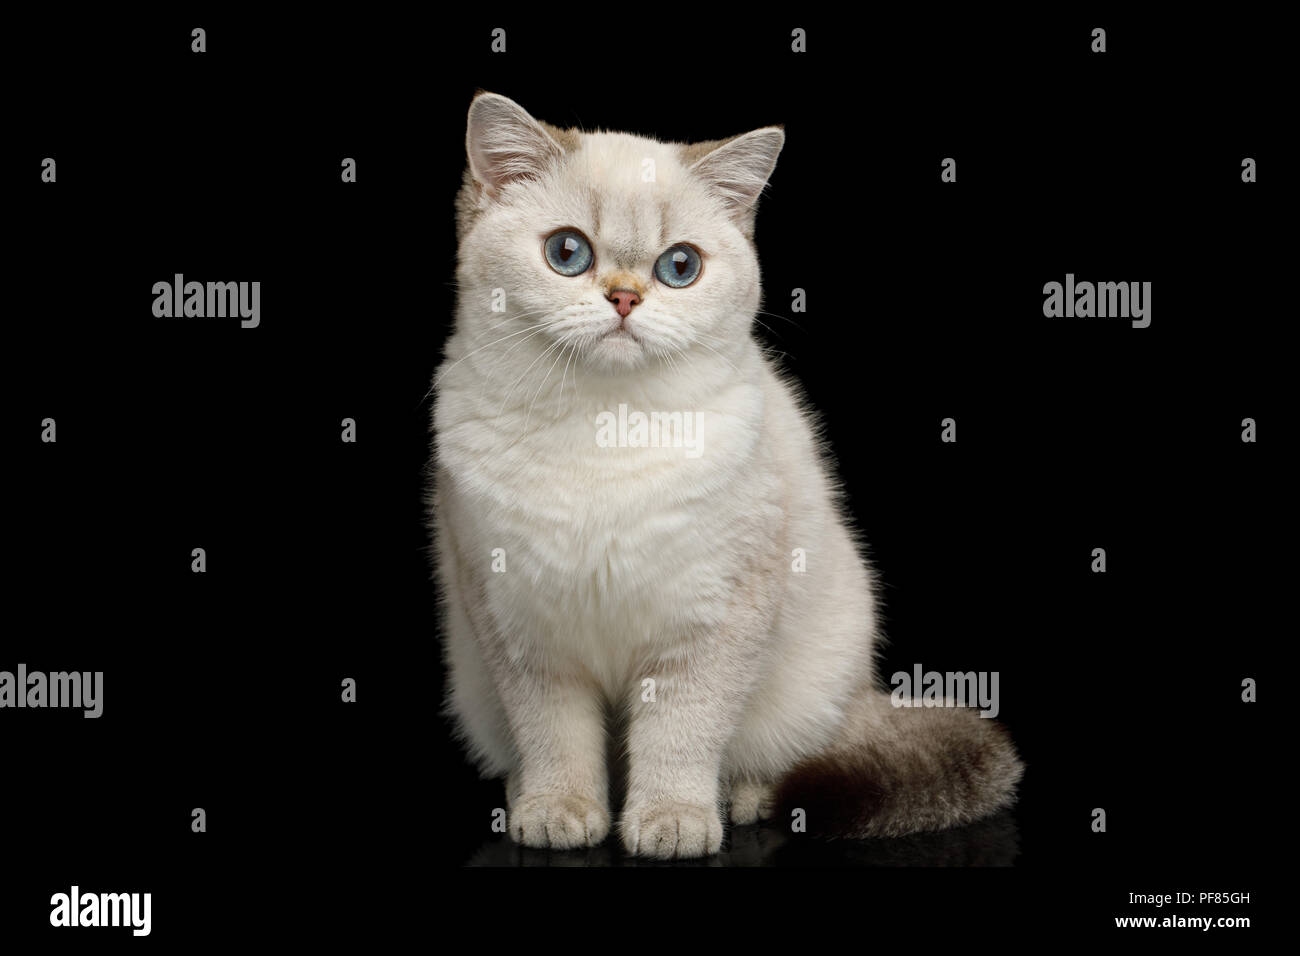 Adorable raza Británico gato mágico color blanco con ojos azules, sentado sobre fondo negro aislado Foto de stock